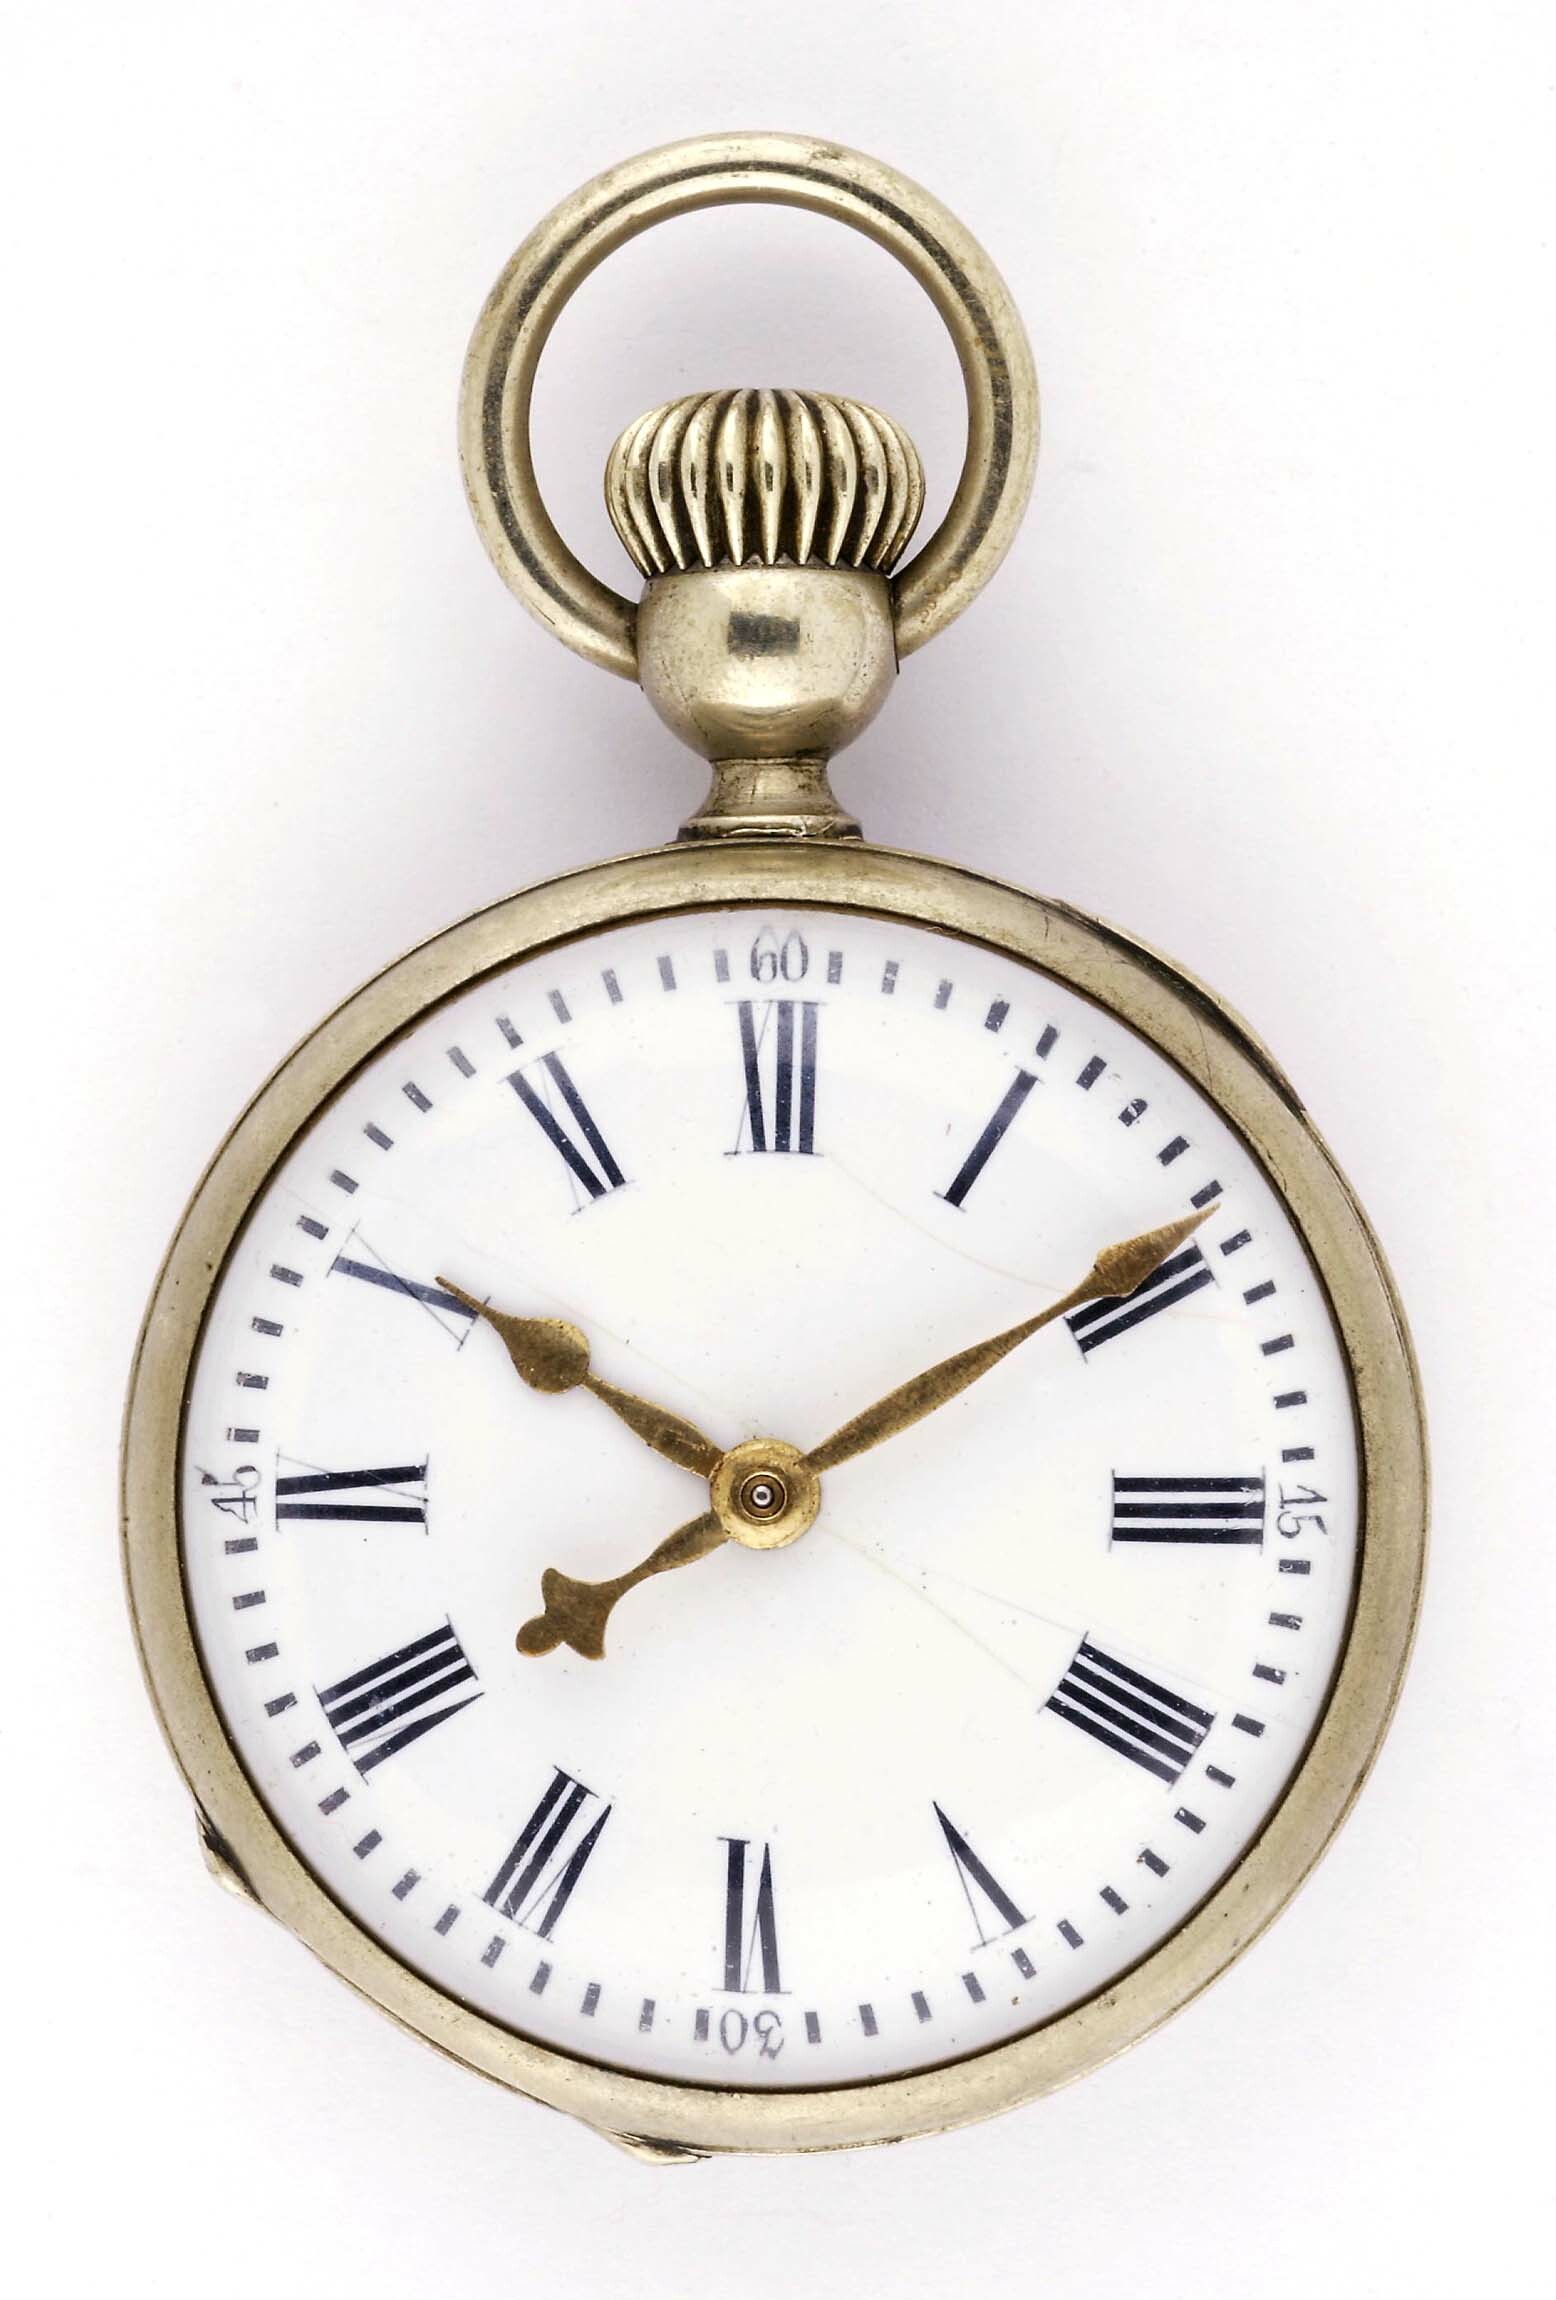 Taschenuhr "La Proletaire", Georges Fréderic Roskopf, La Chaux-de-Fonds, um 1870 (Deutsches Uhrenmuseum CC BY-SA)